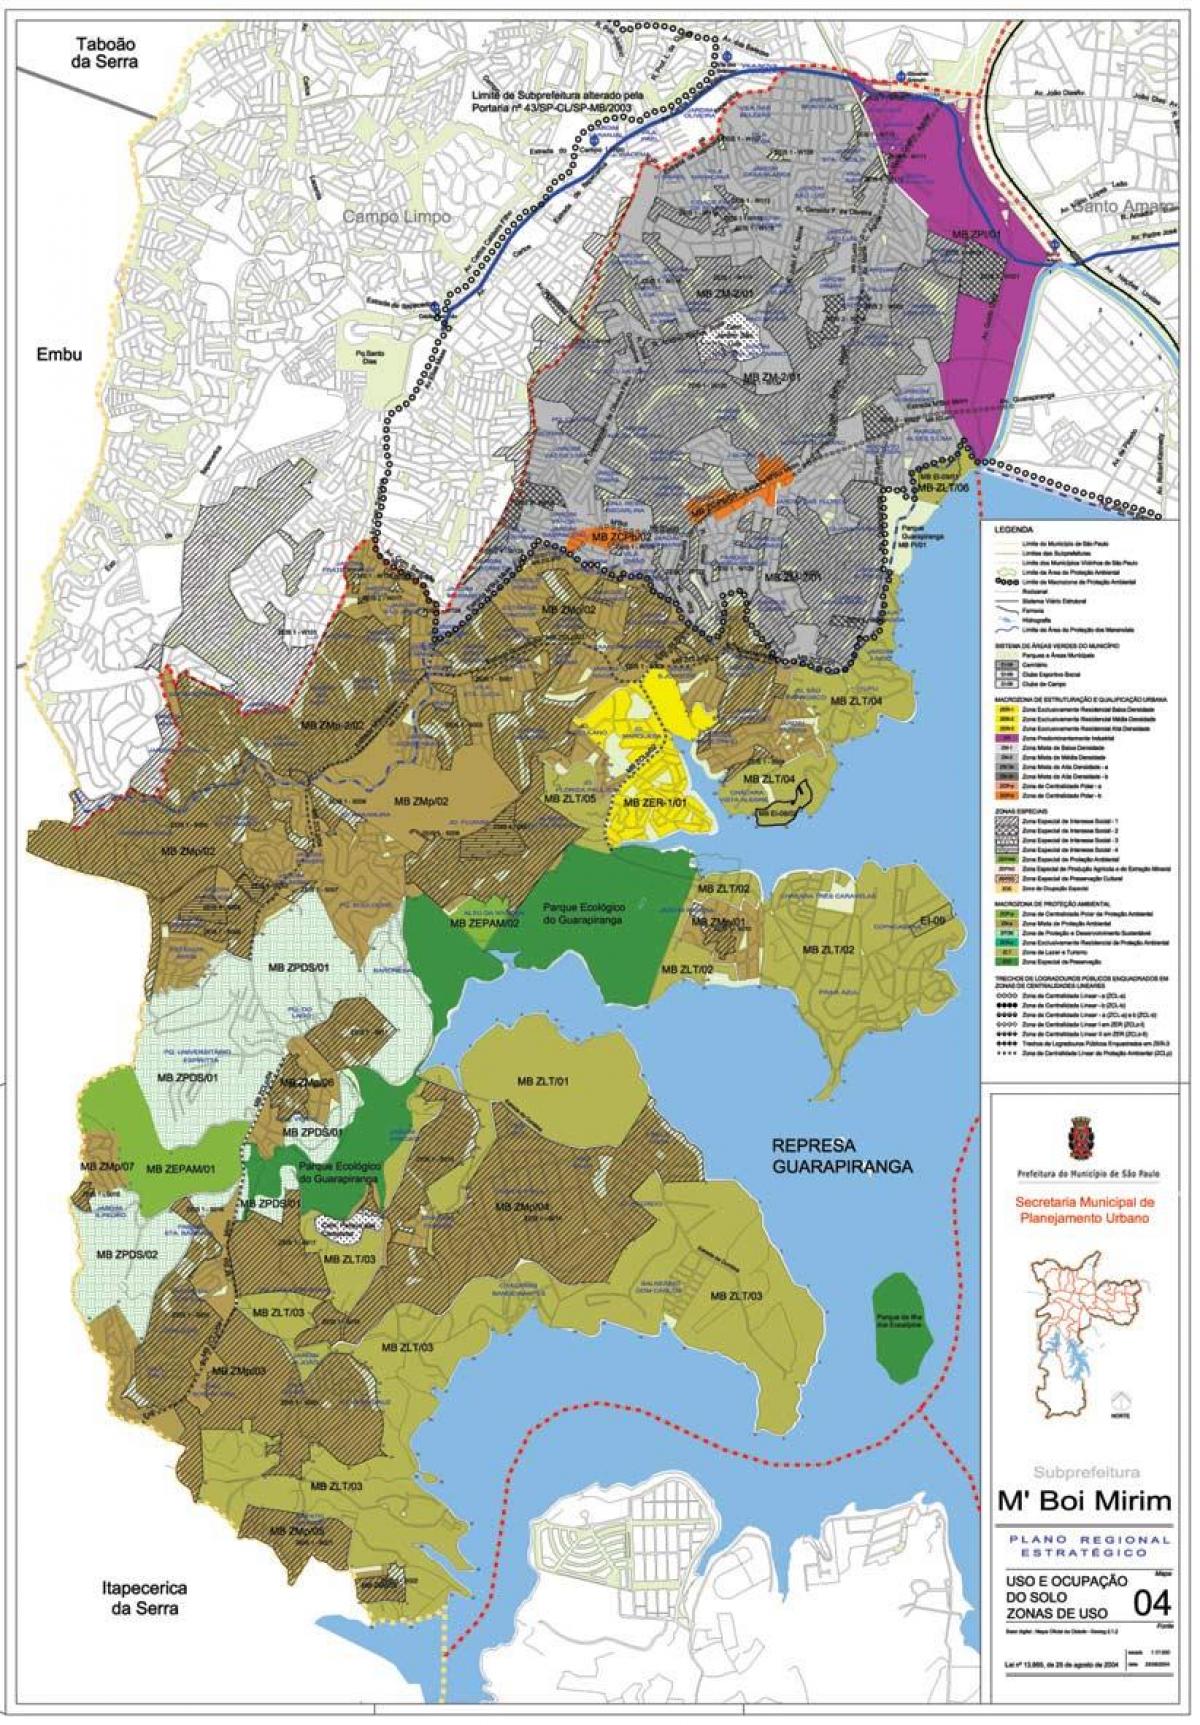 Kaart van M'Boi Mirim São Paulo - Besetting van die grond